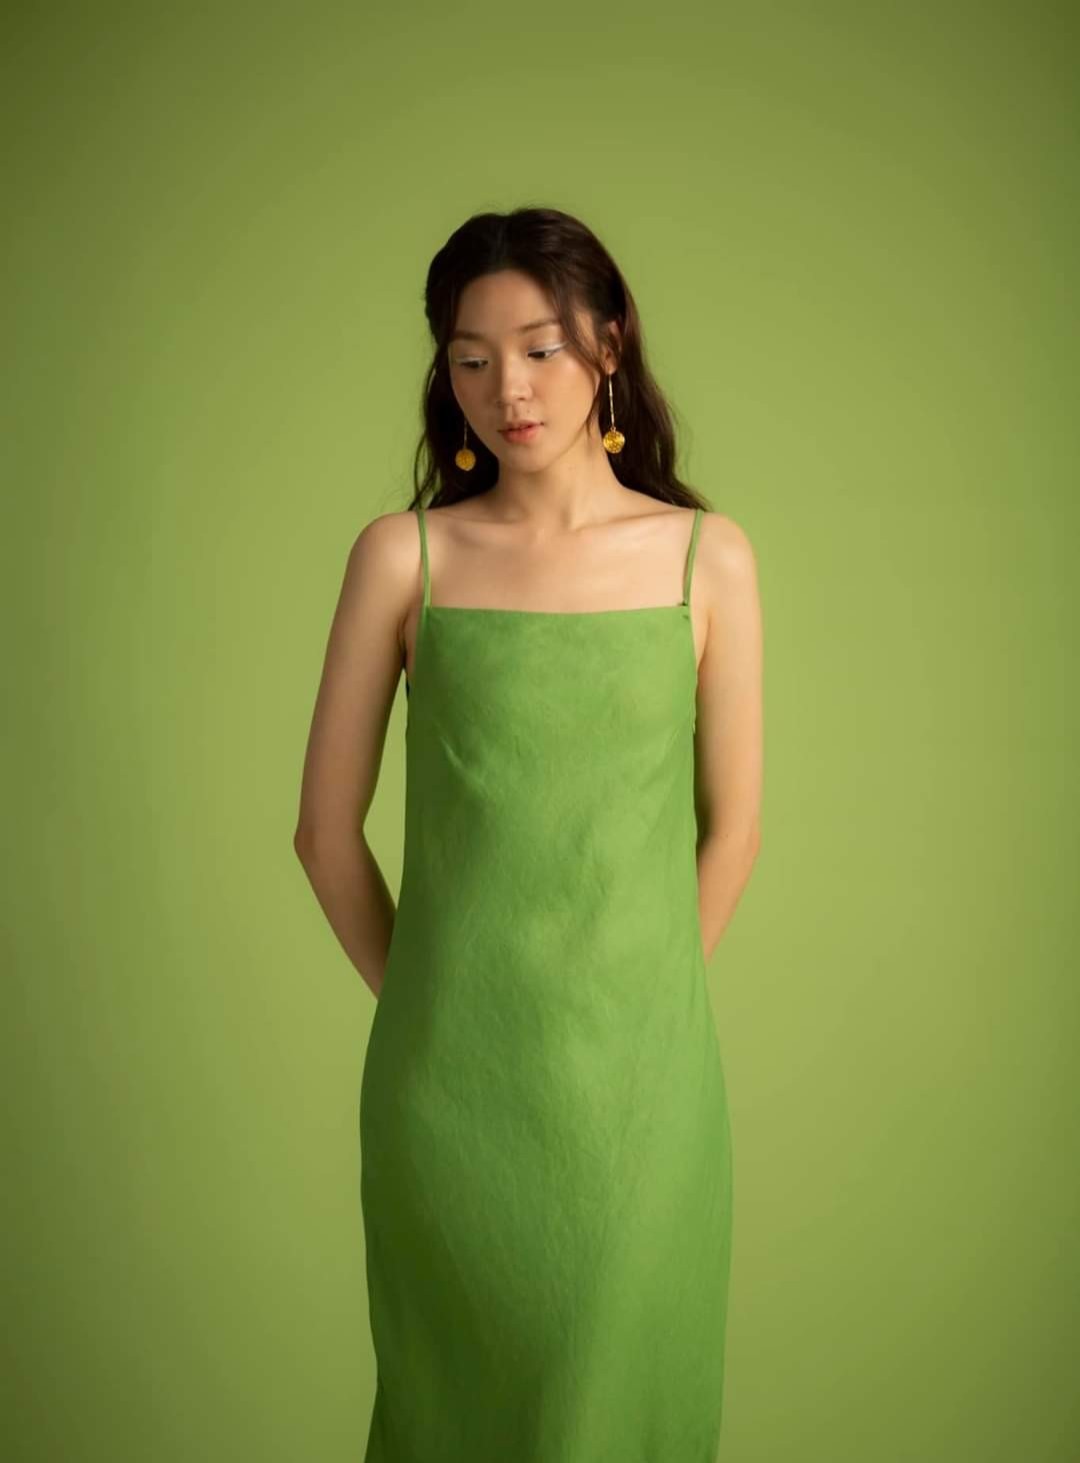 váy xanh lá cây cổ tích kiểu Pháp | Shop Chung | Taobao.com | 1688.com |  Alibaba.com